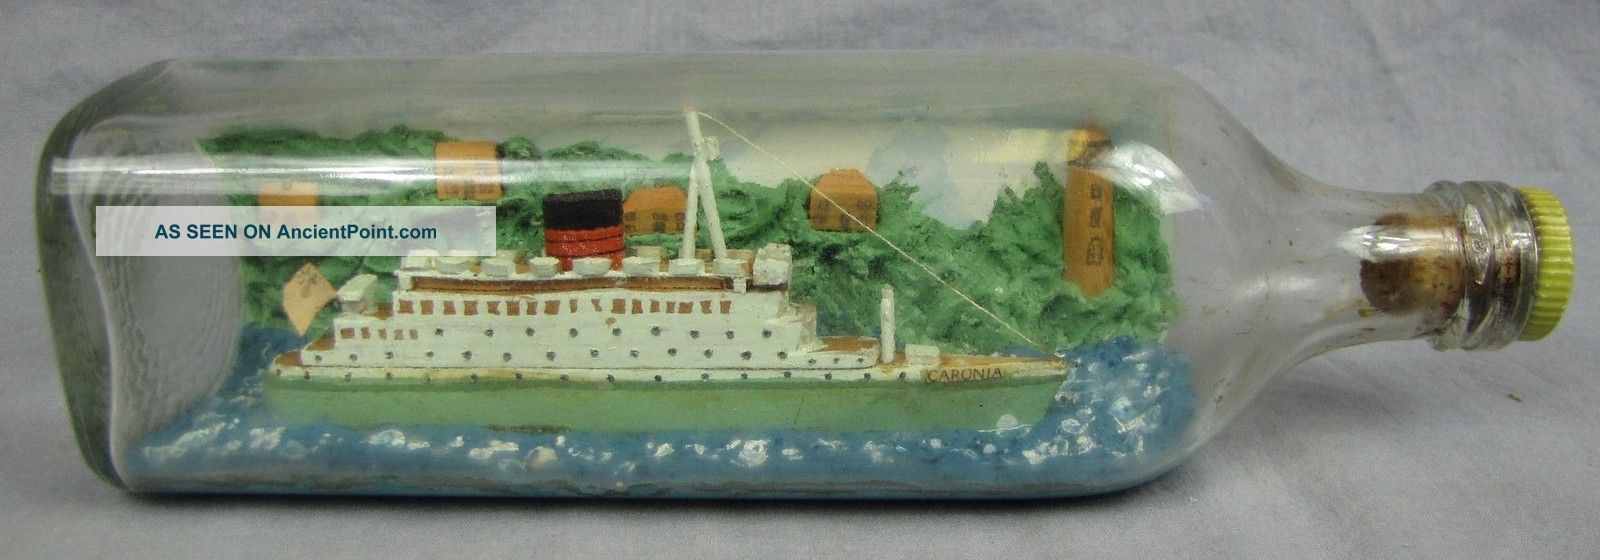 Folk Art Ship In A Bottle Caronia - Cunard White Star Cruise Ship Folk Art photo